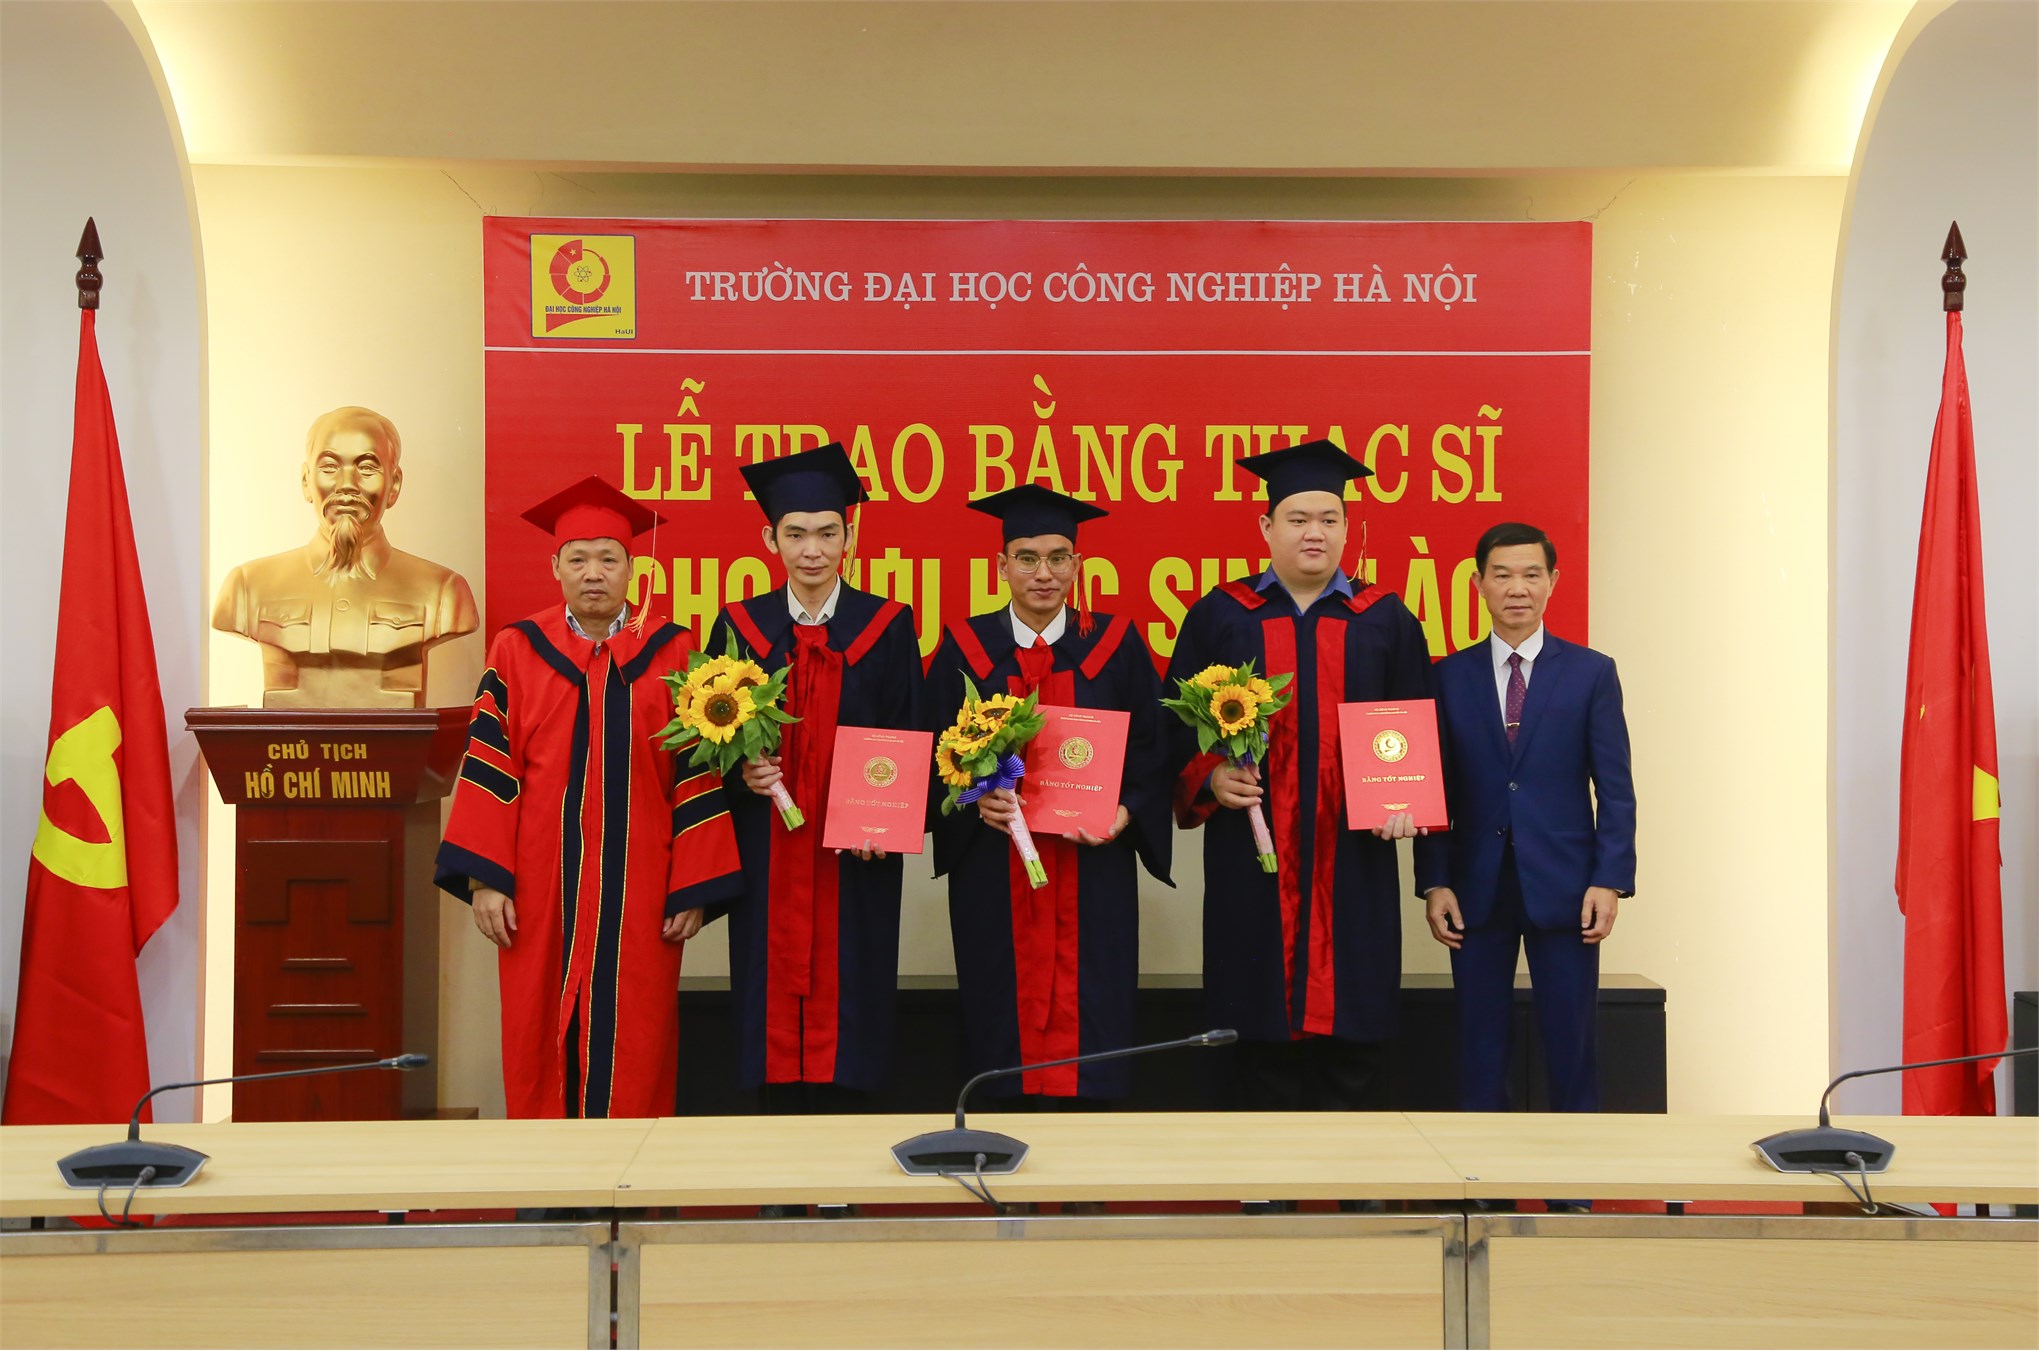 Lễ Trao bằng thạc sĩ cho Lưu học sinh Lào năm 2020